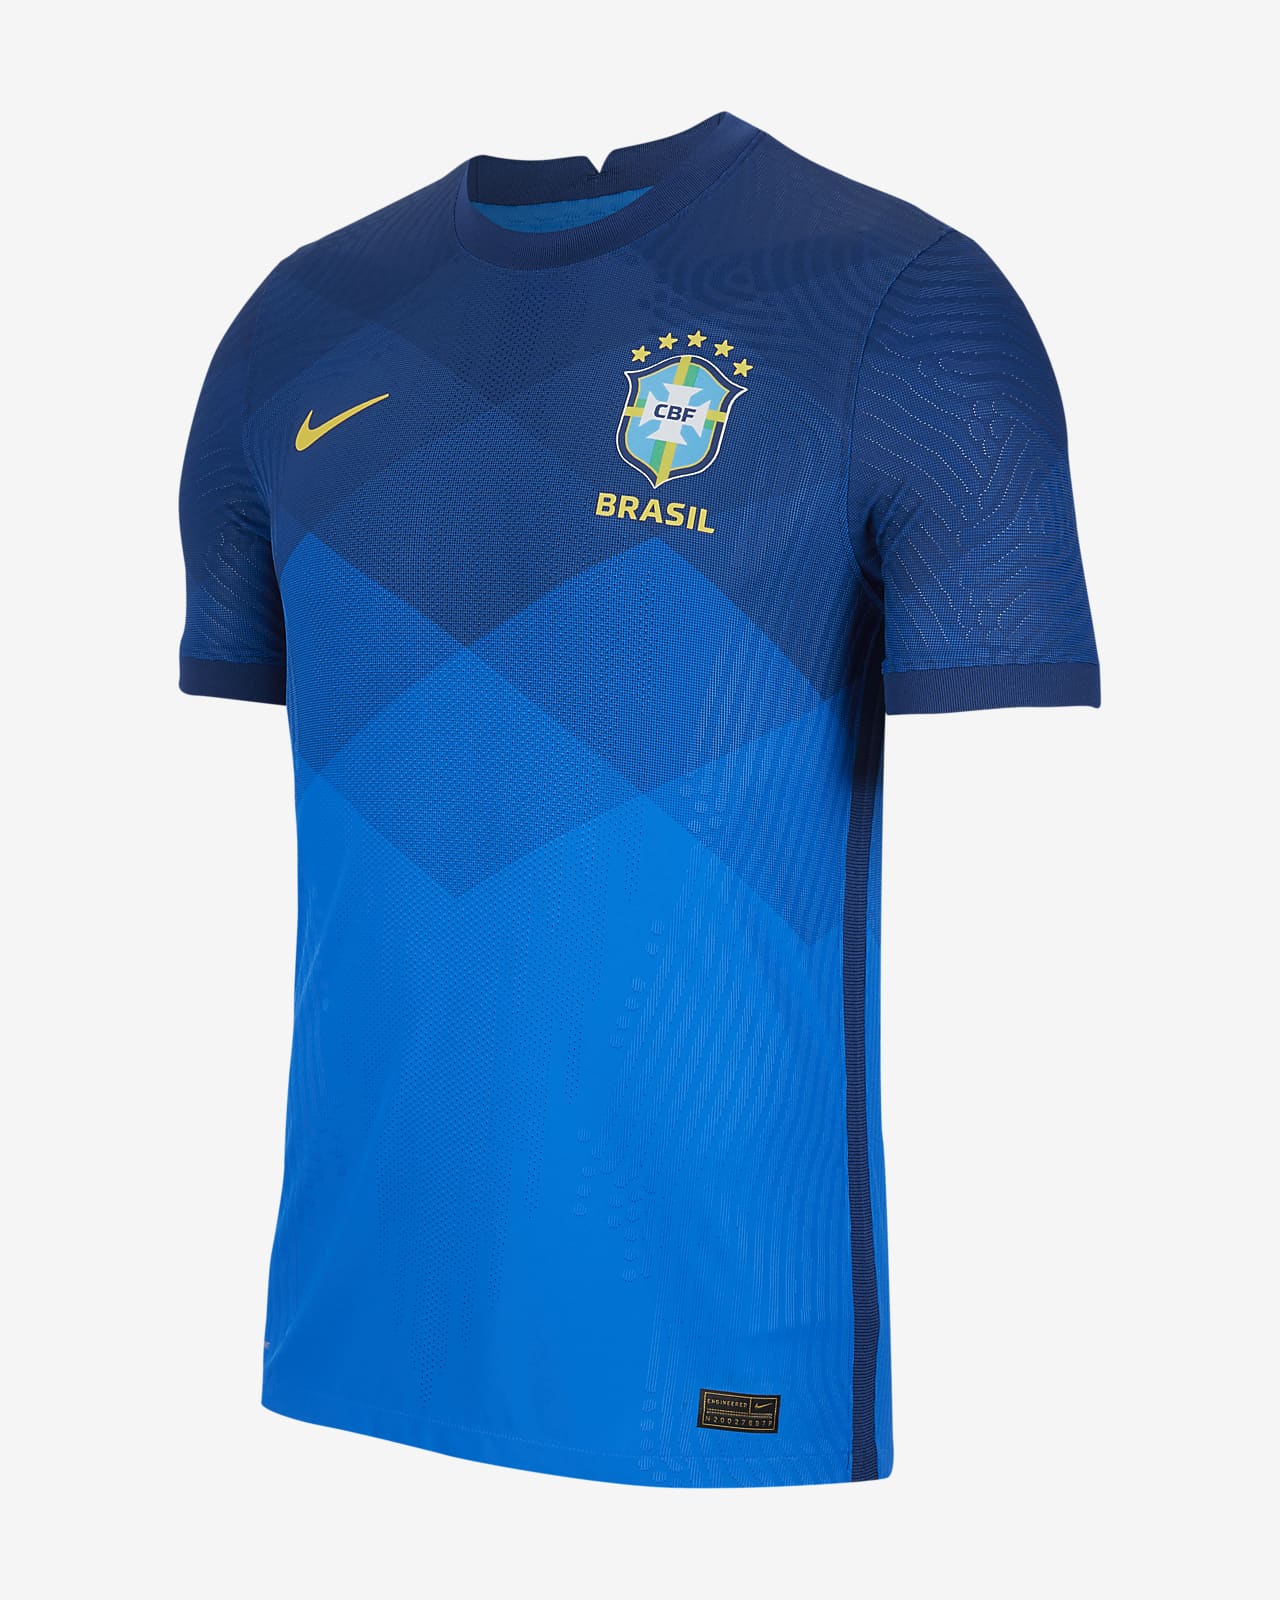 Camiseta de fútbol de visitante para hombre Vapor Match Brasil 2020.  Nike.com